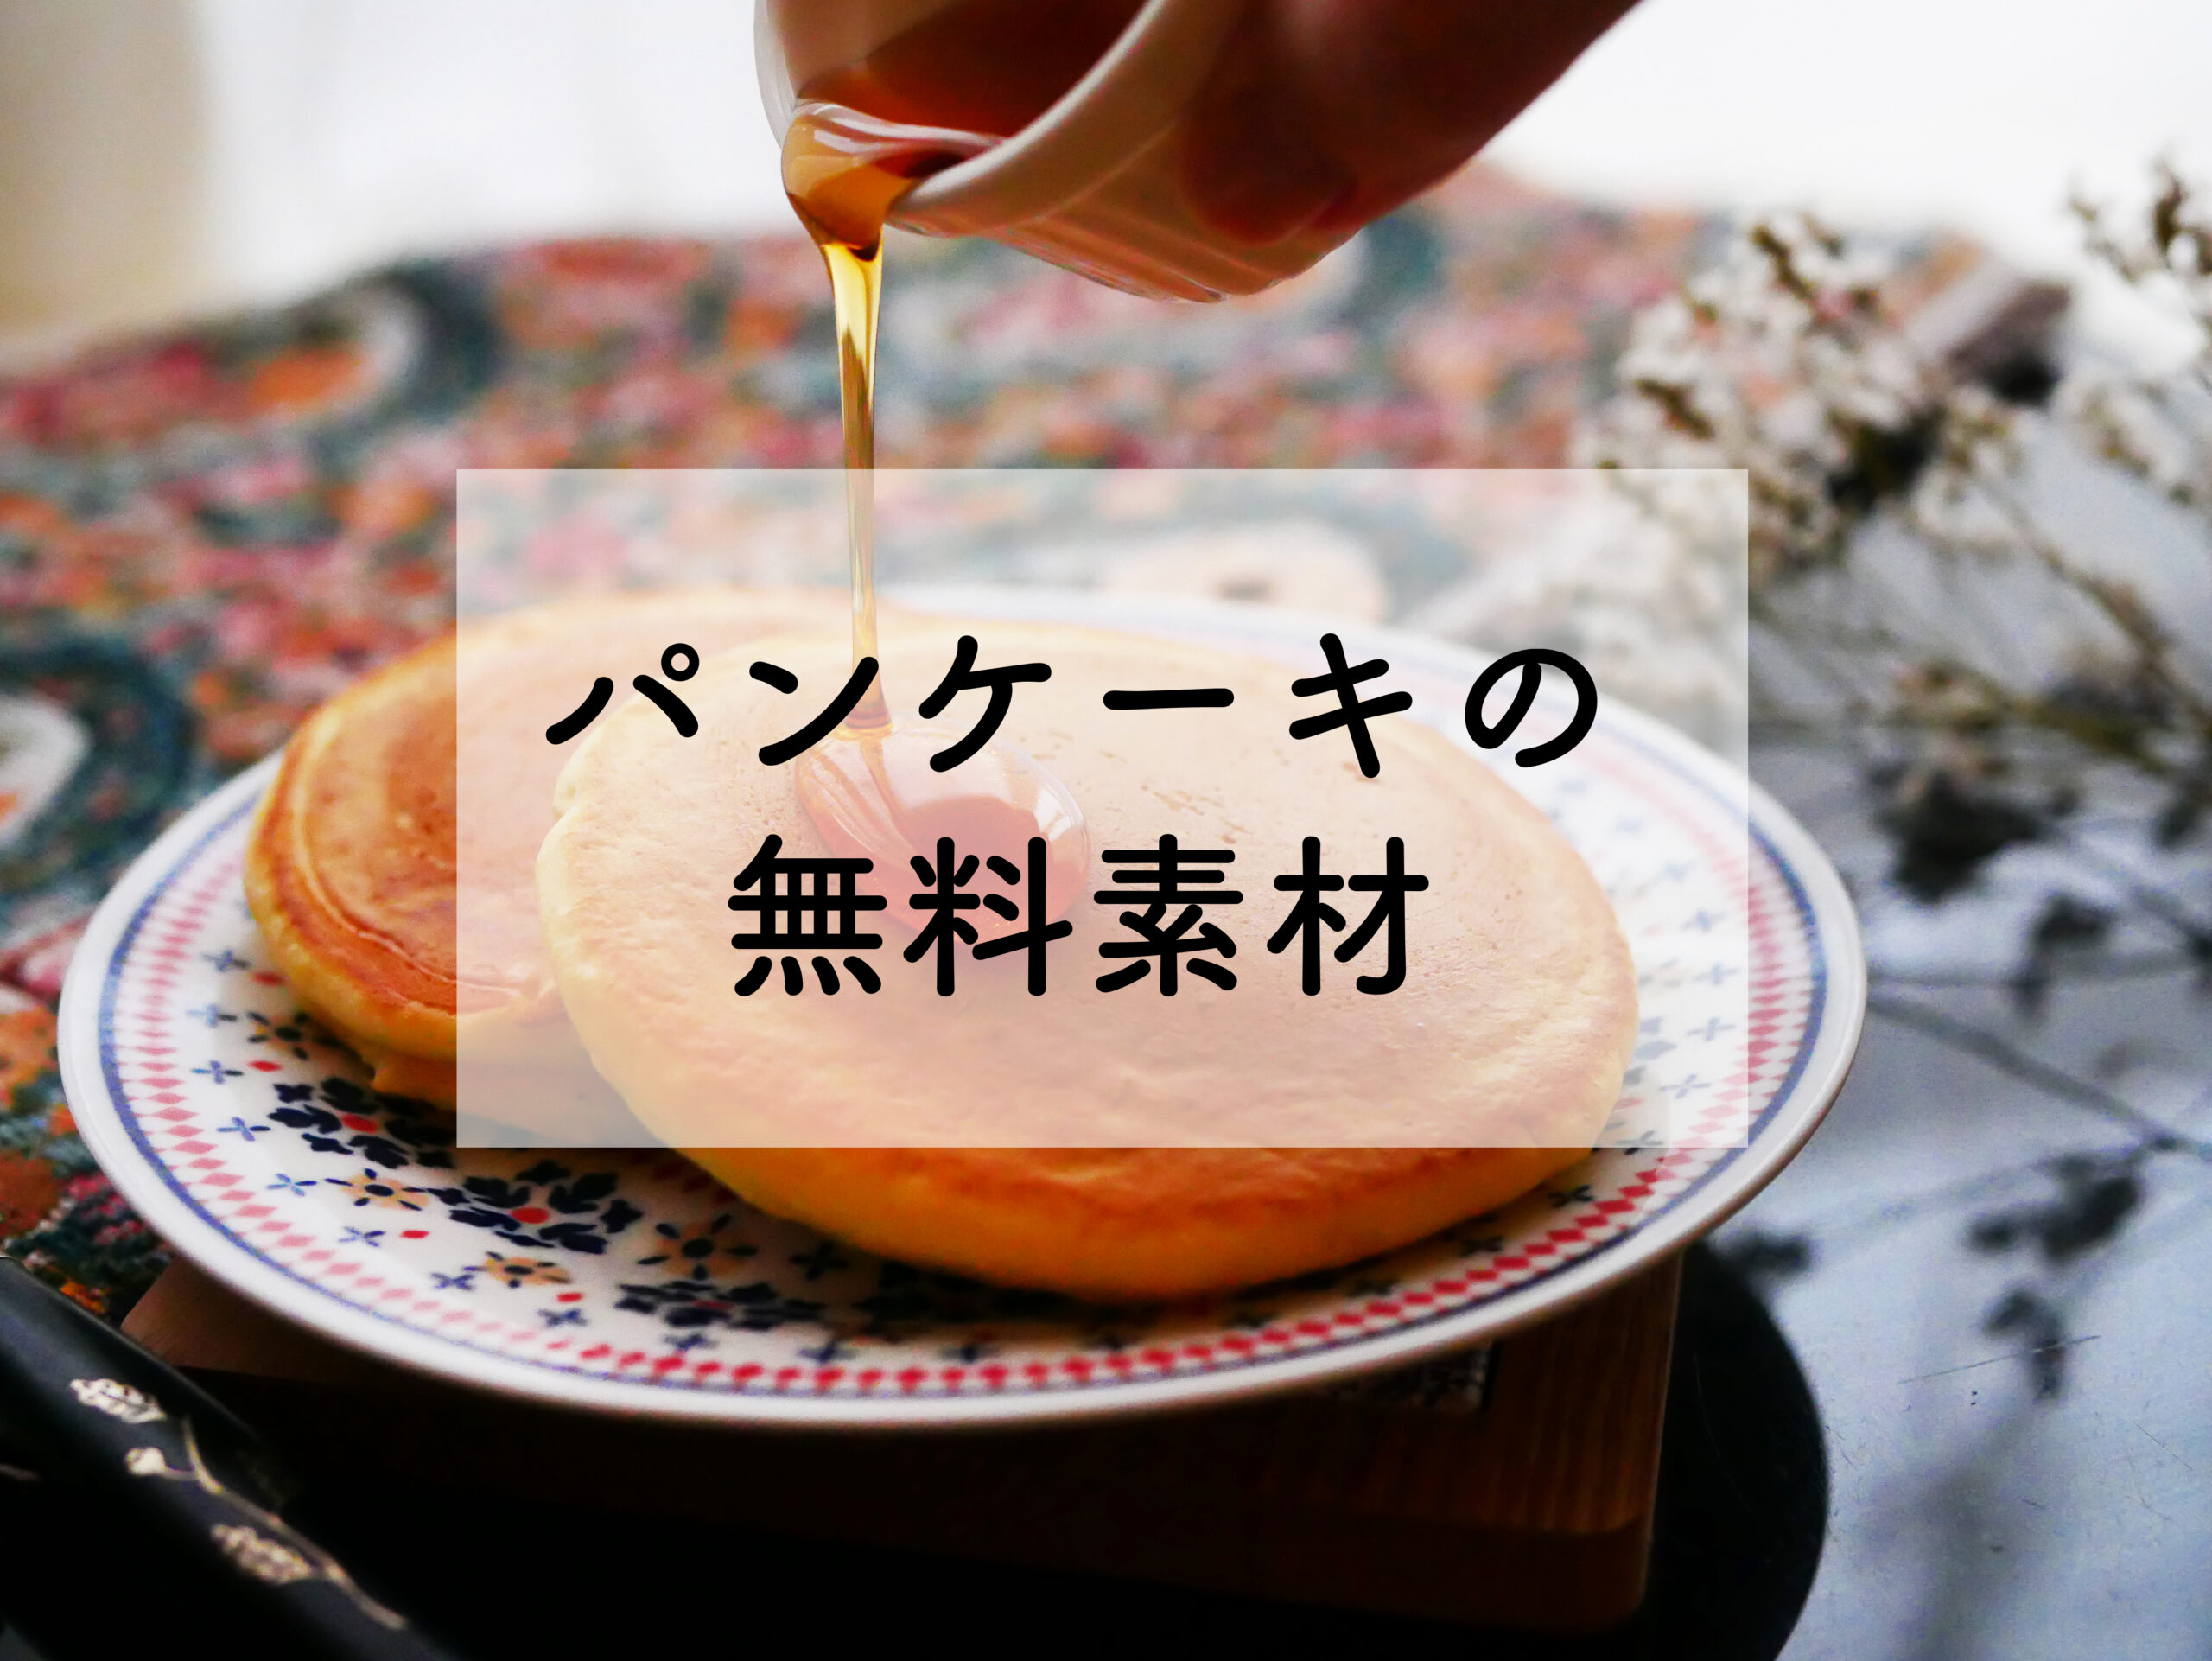 【無料素材】パンケーキのストックフォトご紹介